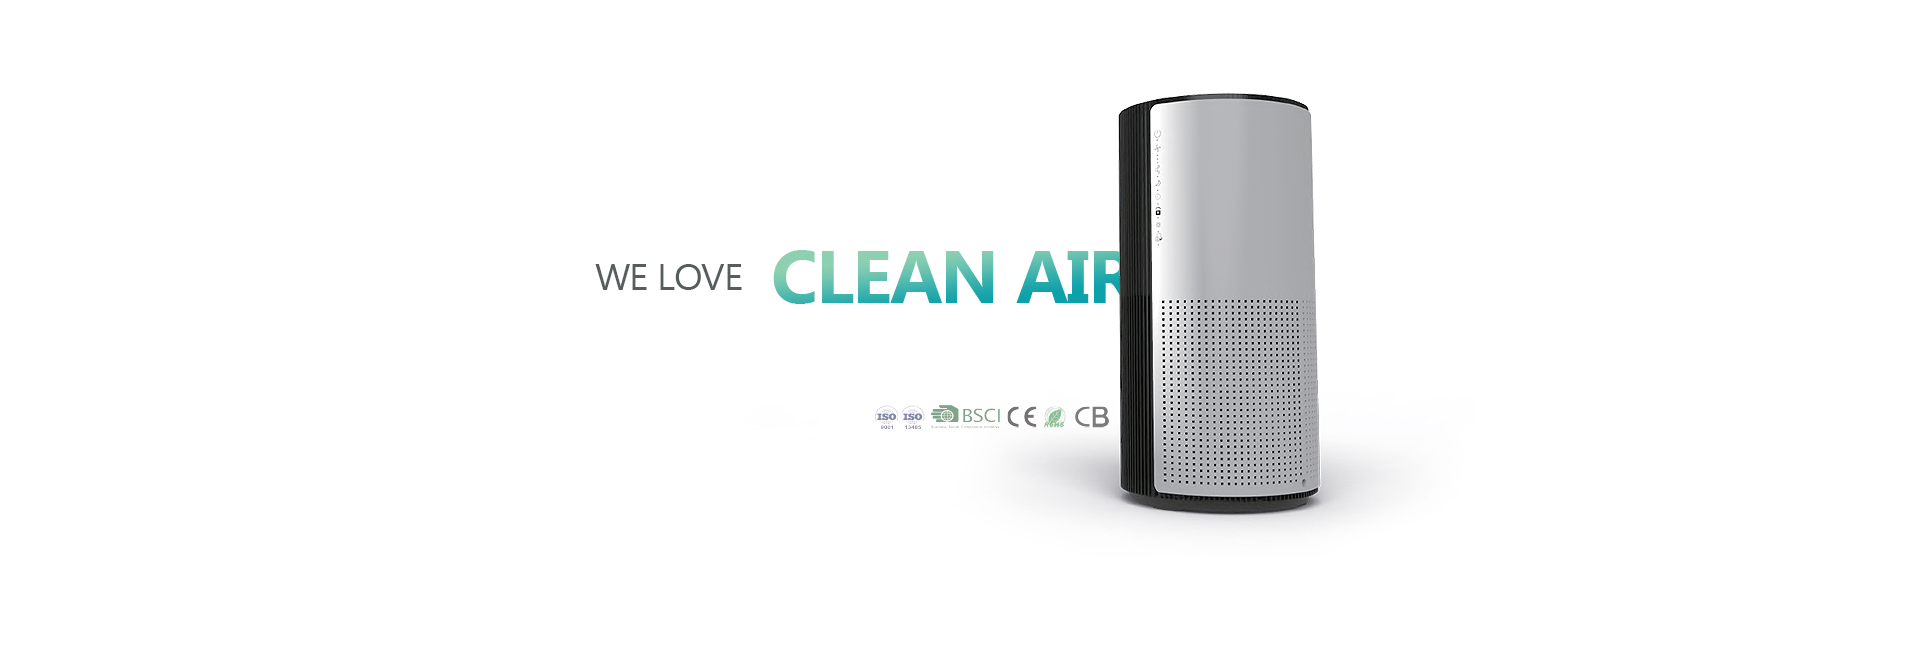 we love clean air